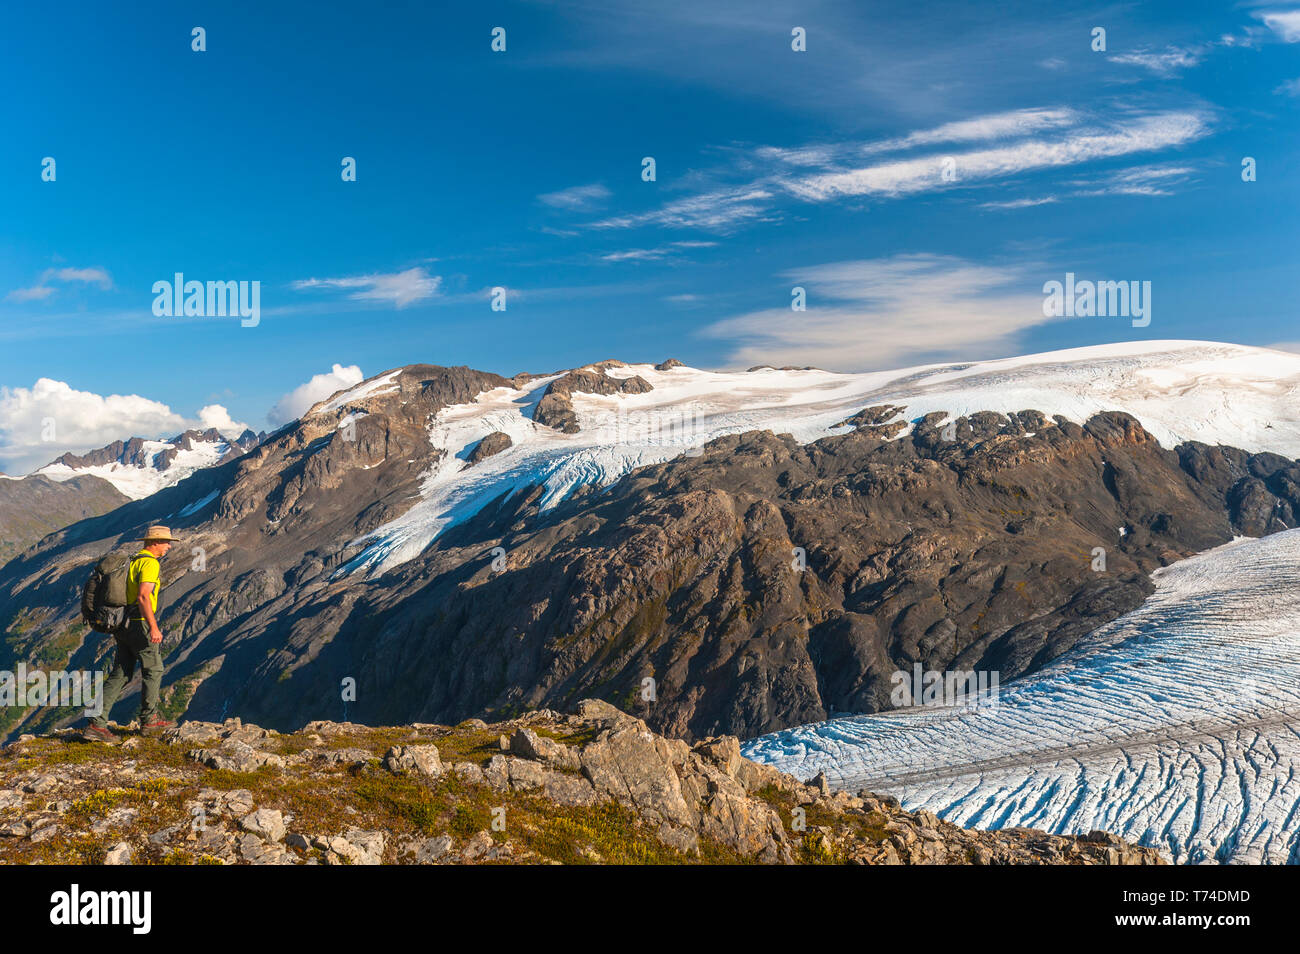 Un homme qui randonnée près de la piste d'Harding Icefield avec les montagnes Kenai et un glacier suspendu sans nom en arrière-plan, Parc national de Kenai Fjords,... Banque D'Images